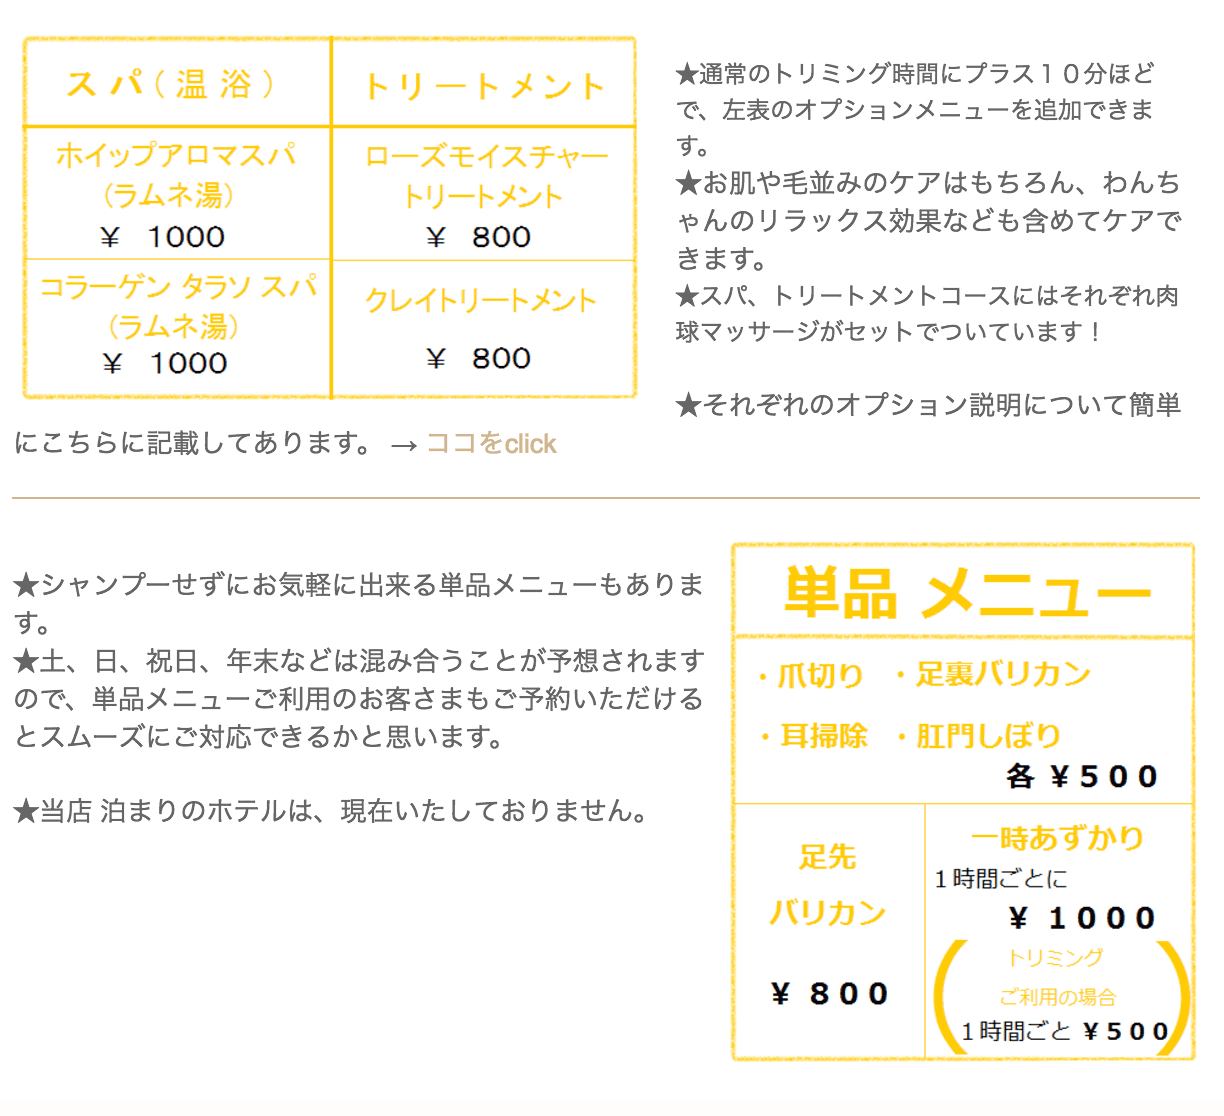 単品は500円から、オプションは1000円から、一時預かりは1時間ごとに1000円